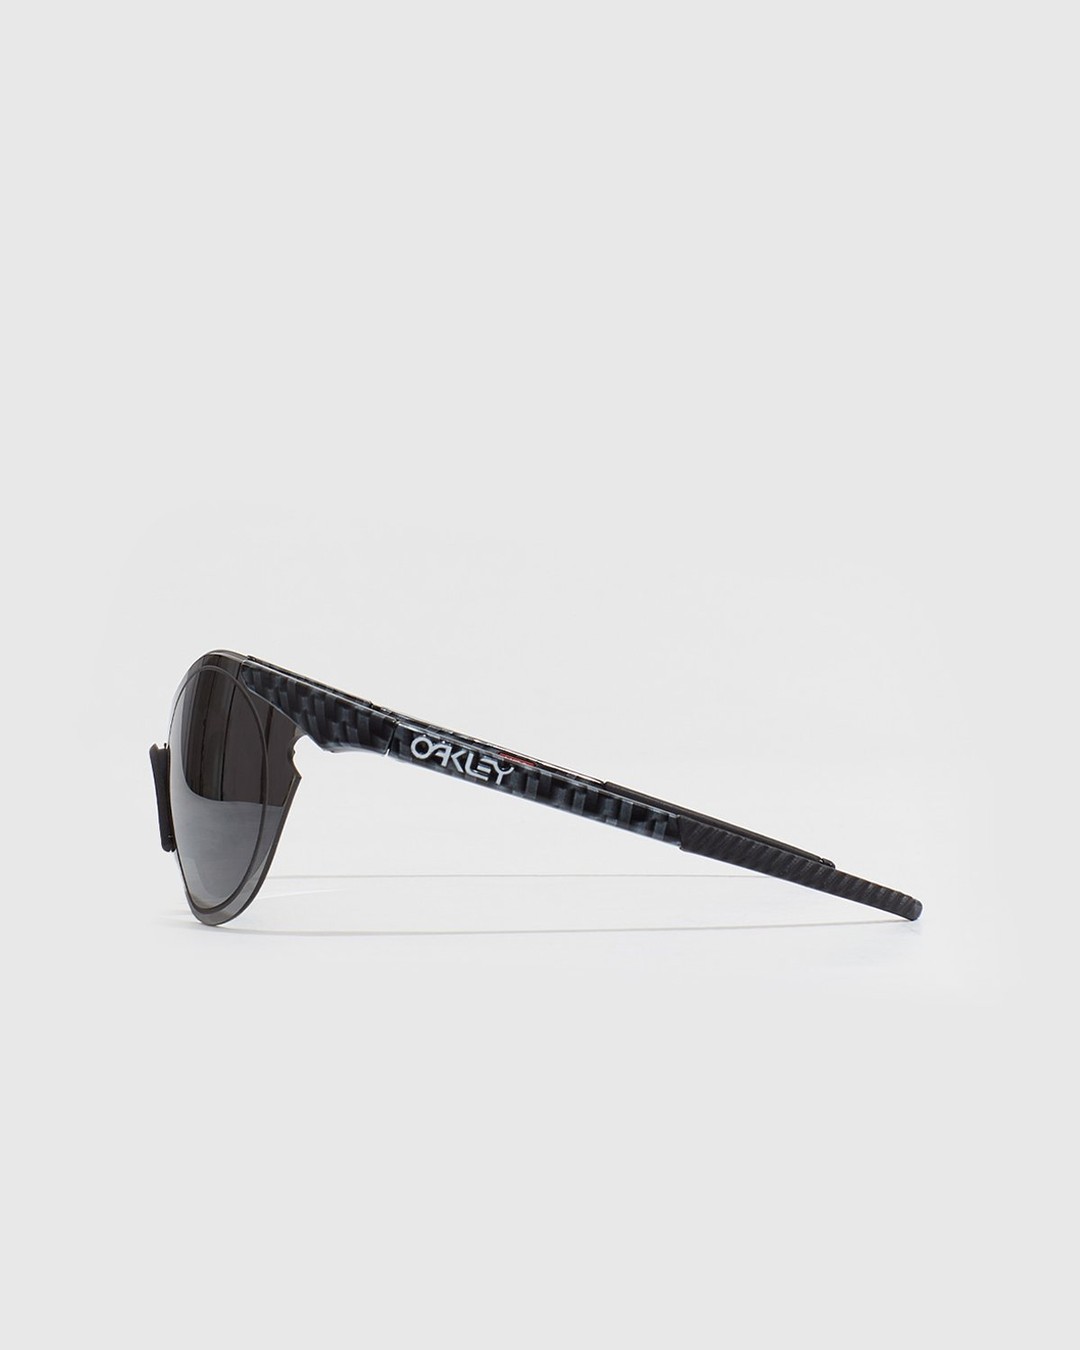 Oakley – Sub Zero Carbon Fiber Prizm Black - Sunglasses - Black - Image 2